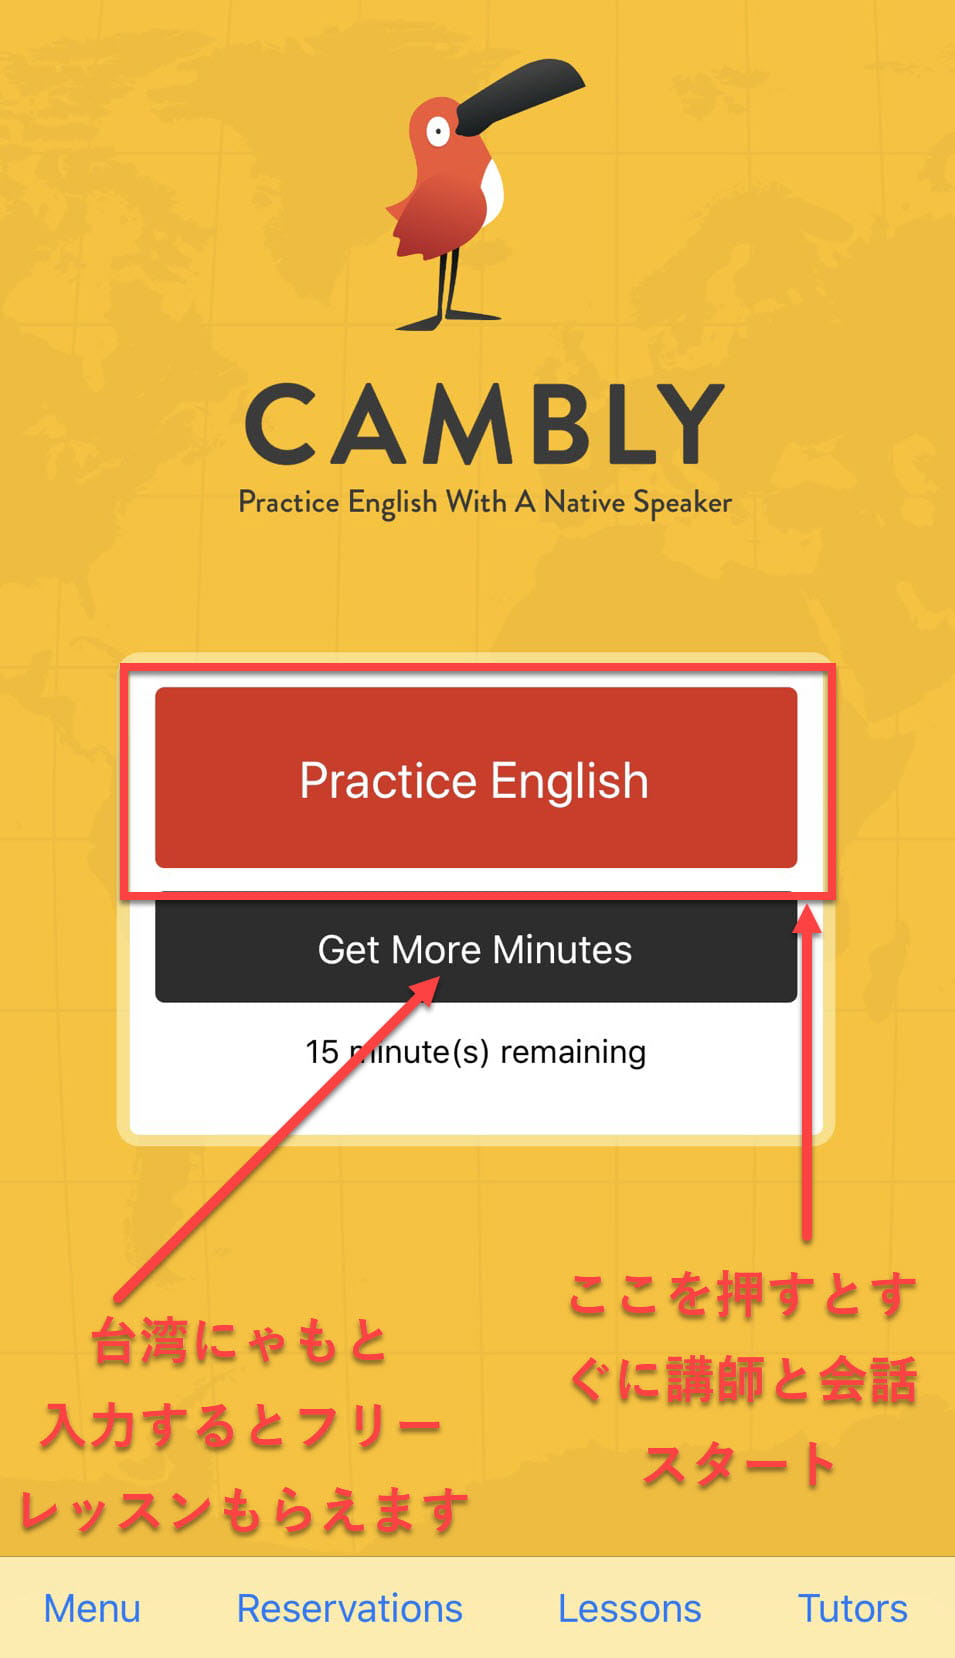 Camblyアプリホーム画面英語の説明 台湾にゃも 海外でちゃいなよ